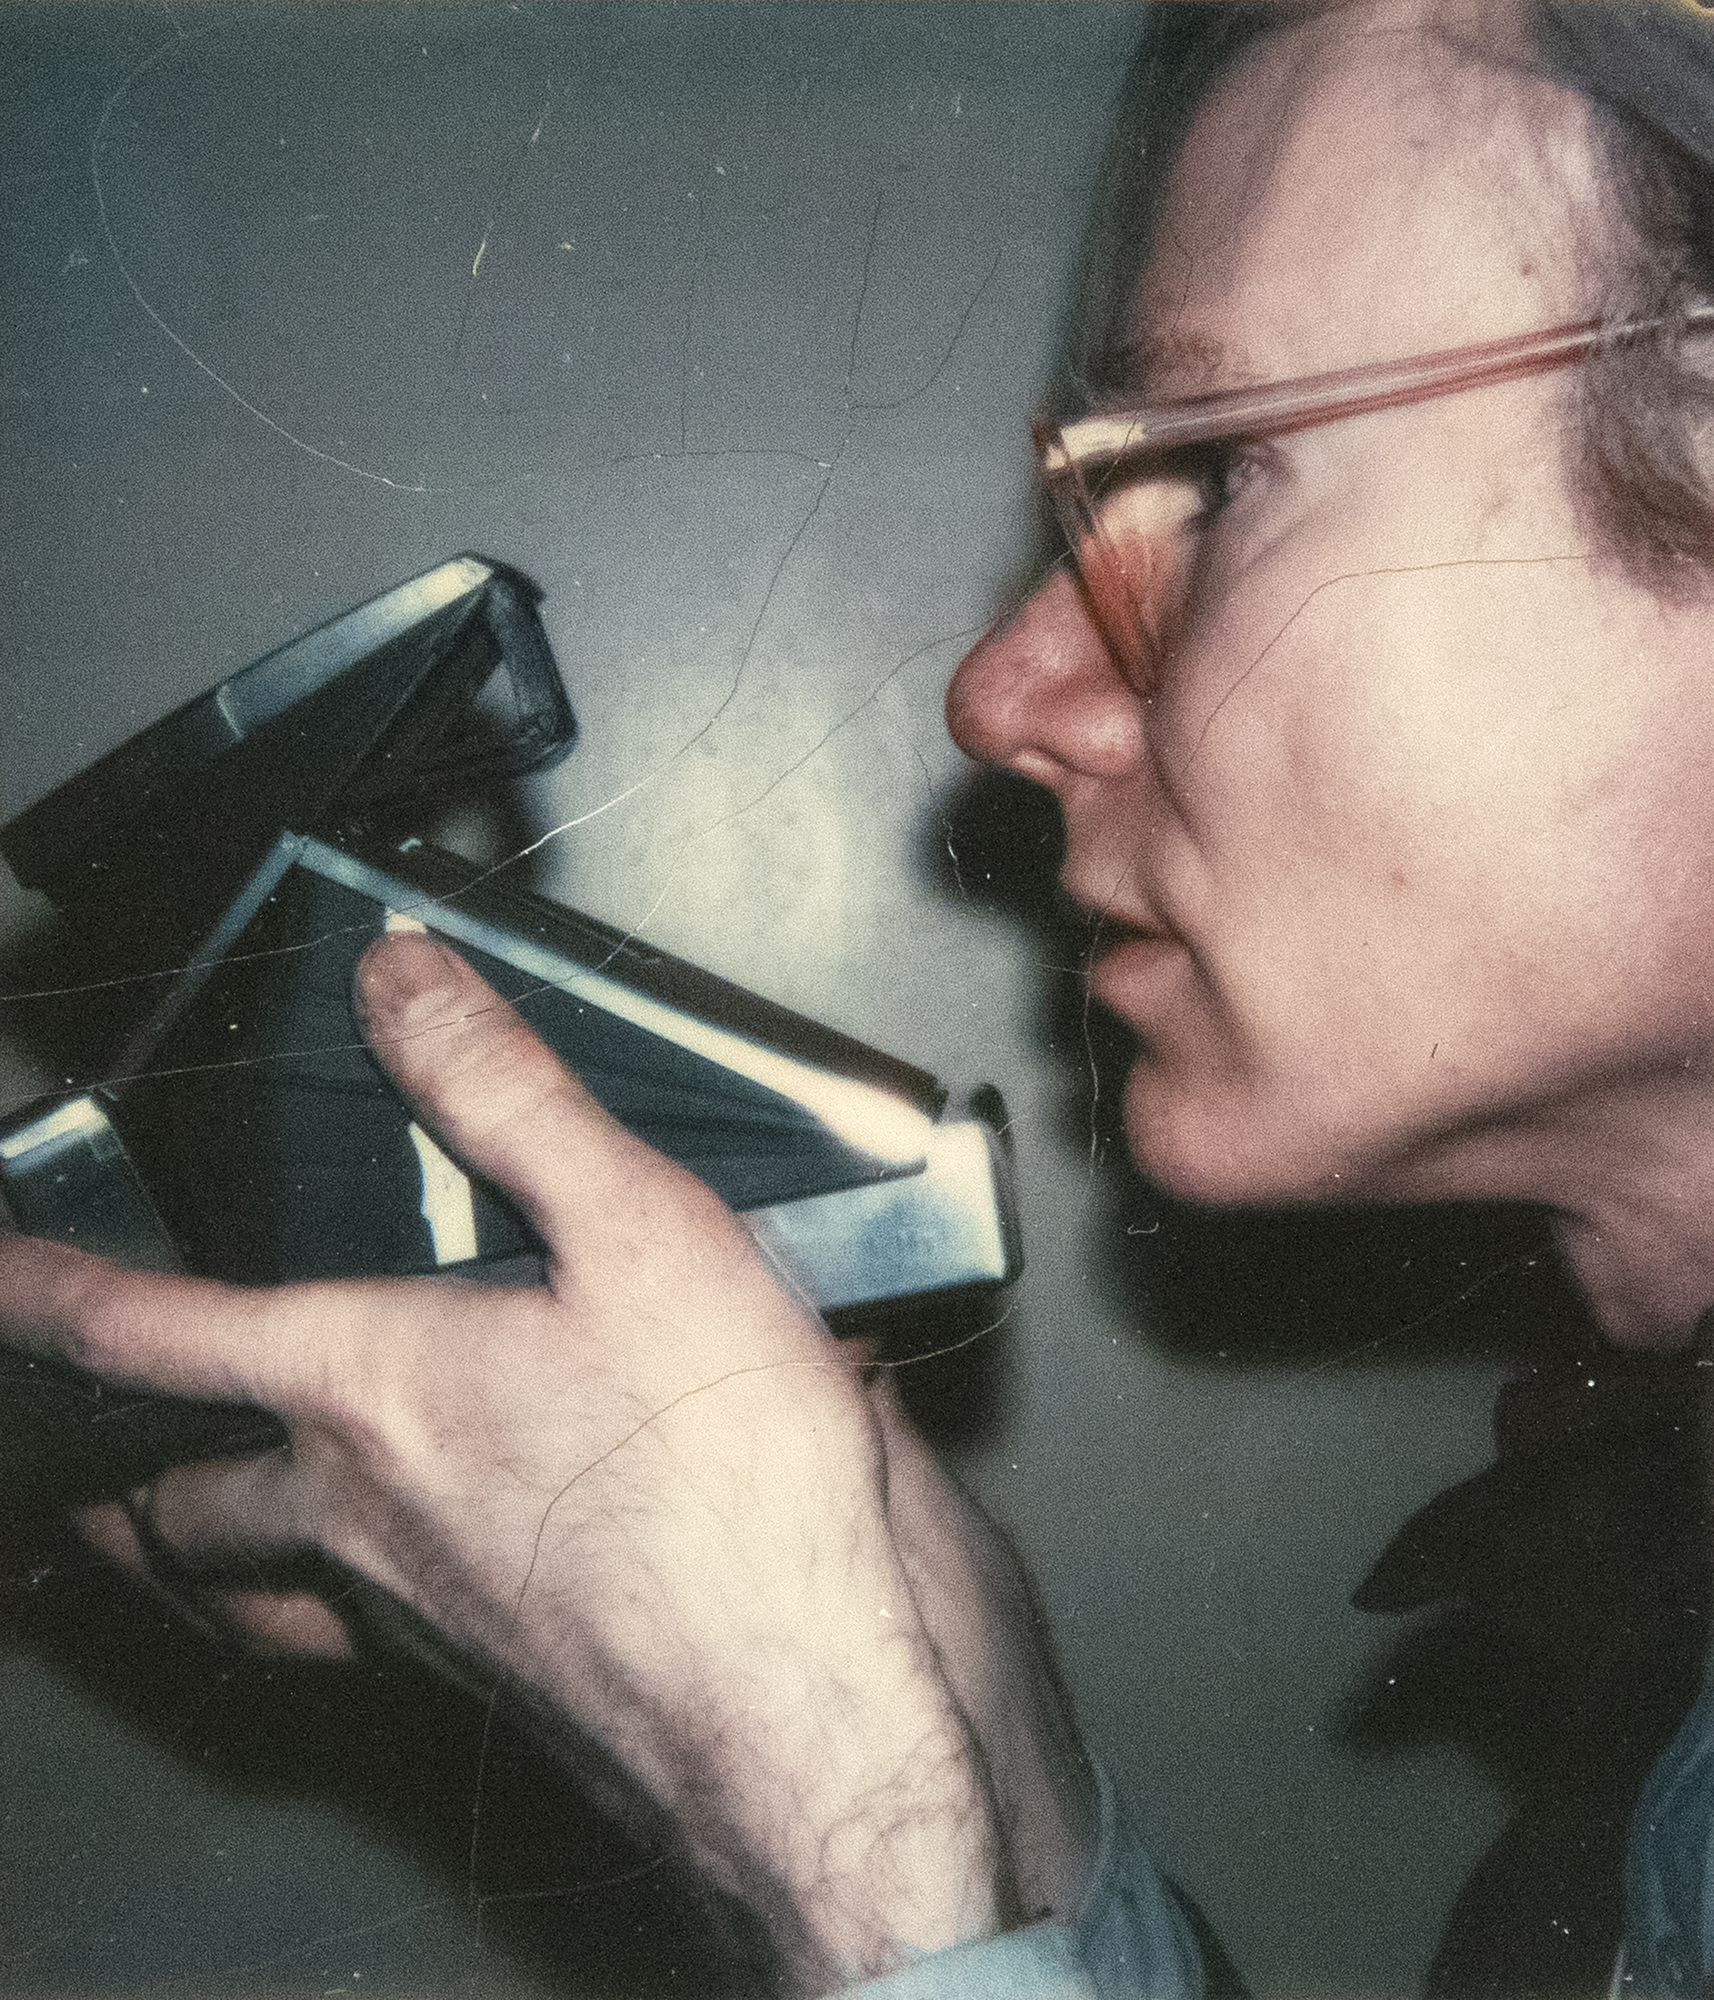 安迪-沃霍尔（Andy Warhol）从 20 世纪 50 年代末到 1987 年去世前，一直带着宝丽来相机，坚持不懈地记录生活及其际遇。他积累的大量宝丽来照片是自发的、未经加工的，往往是原始的，是他那个时代的编年史，类似于 Instagram 反映我们当今时代的方式。这幅自画像可能是由另一个人拍摄的，这就像一个隐晦的命题，要求观者接受它是一幅自画像，也可能是沃霍尔使用外部自拍配件拍摄的。这是一幅颂扬沃霍尔一生所依赖的设备的肖像画，是对他与宝丽来相机之间关系的精心致敬。